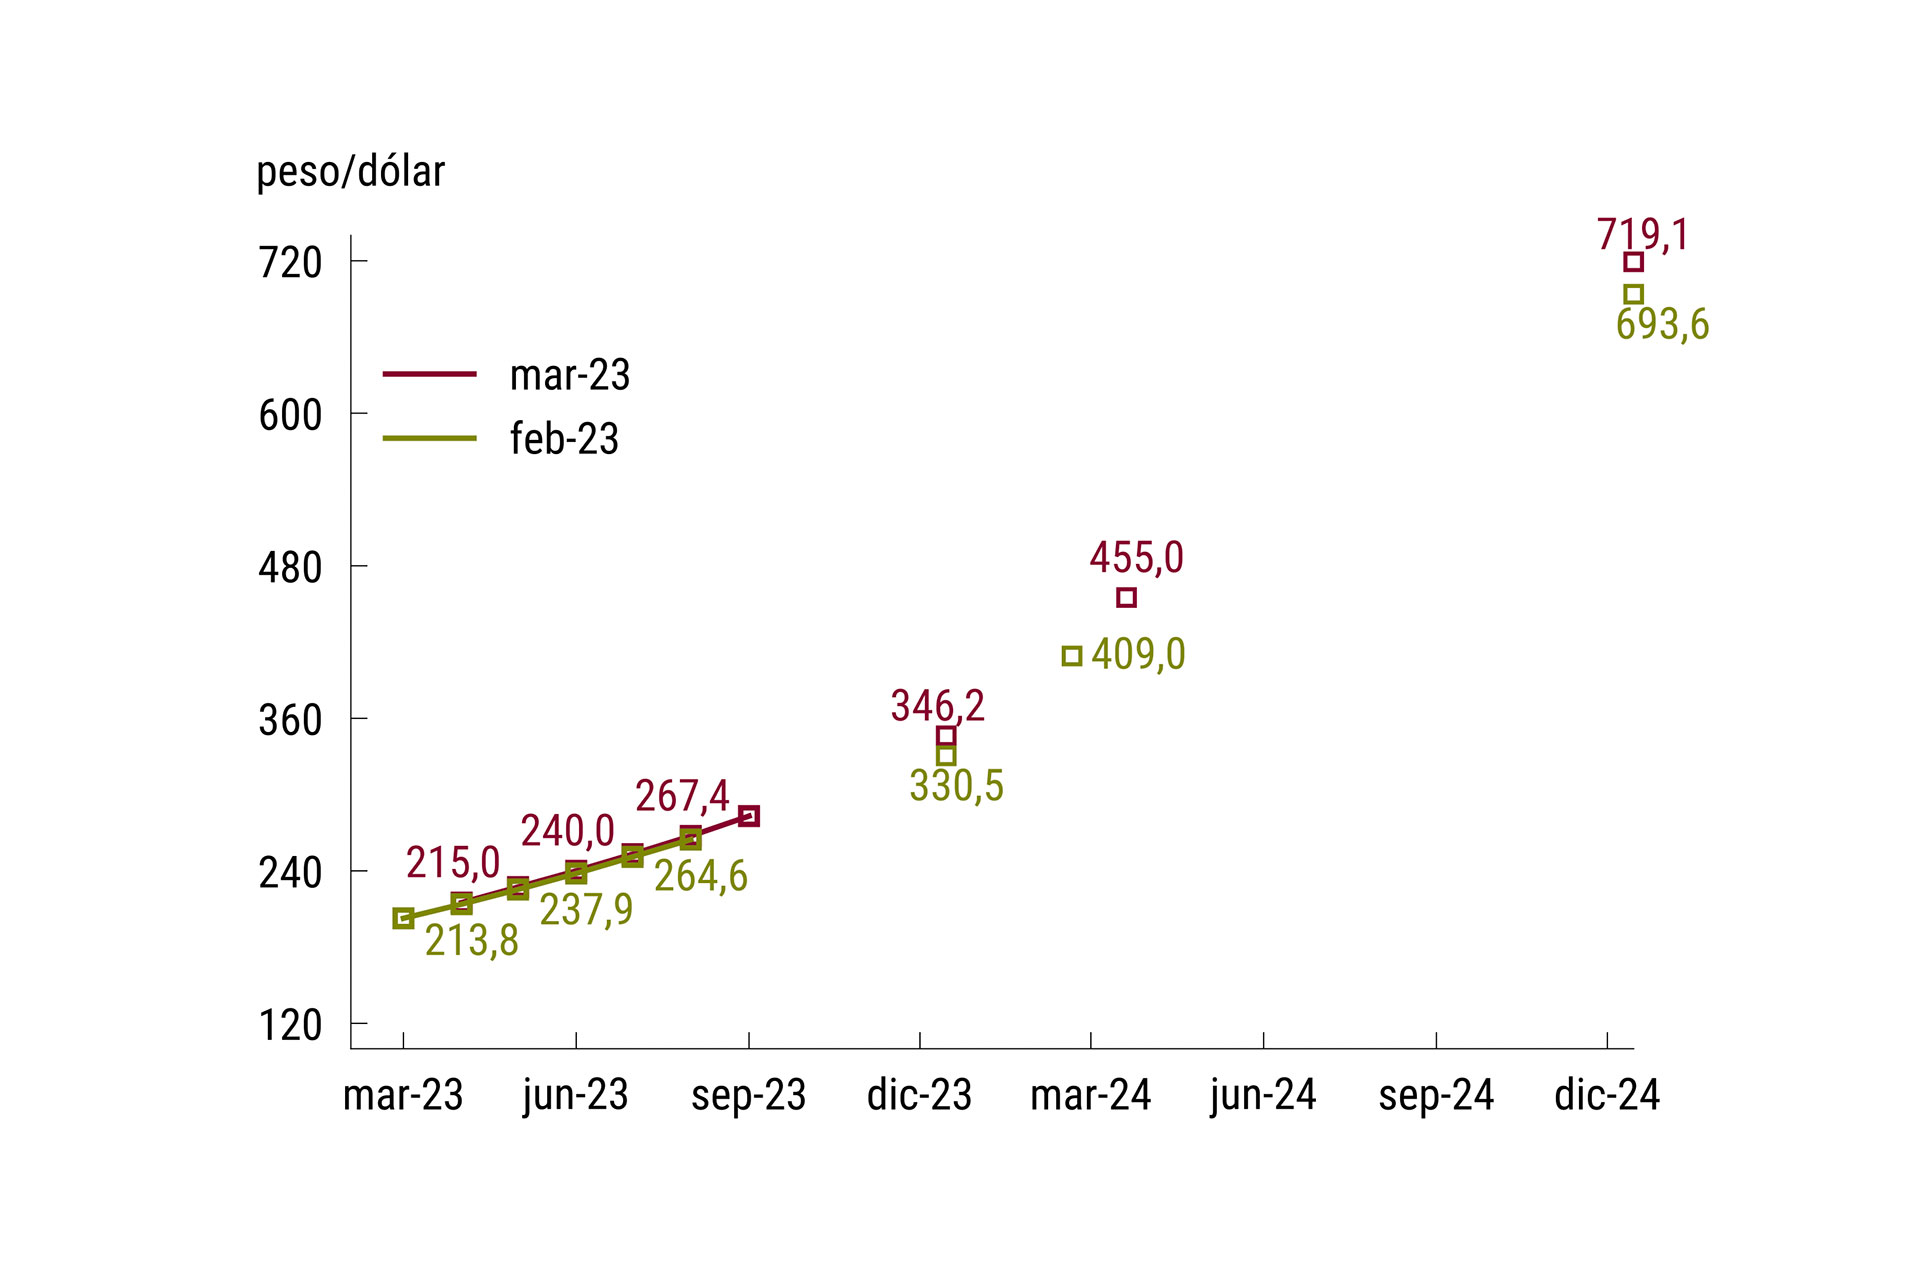 Fuente: Relevamiento de Expectativas de Mercado (REM), marzo 2023